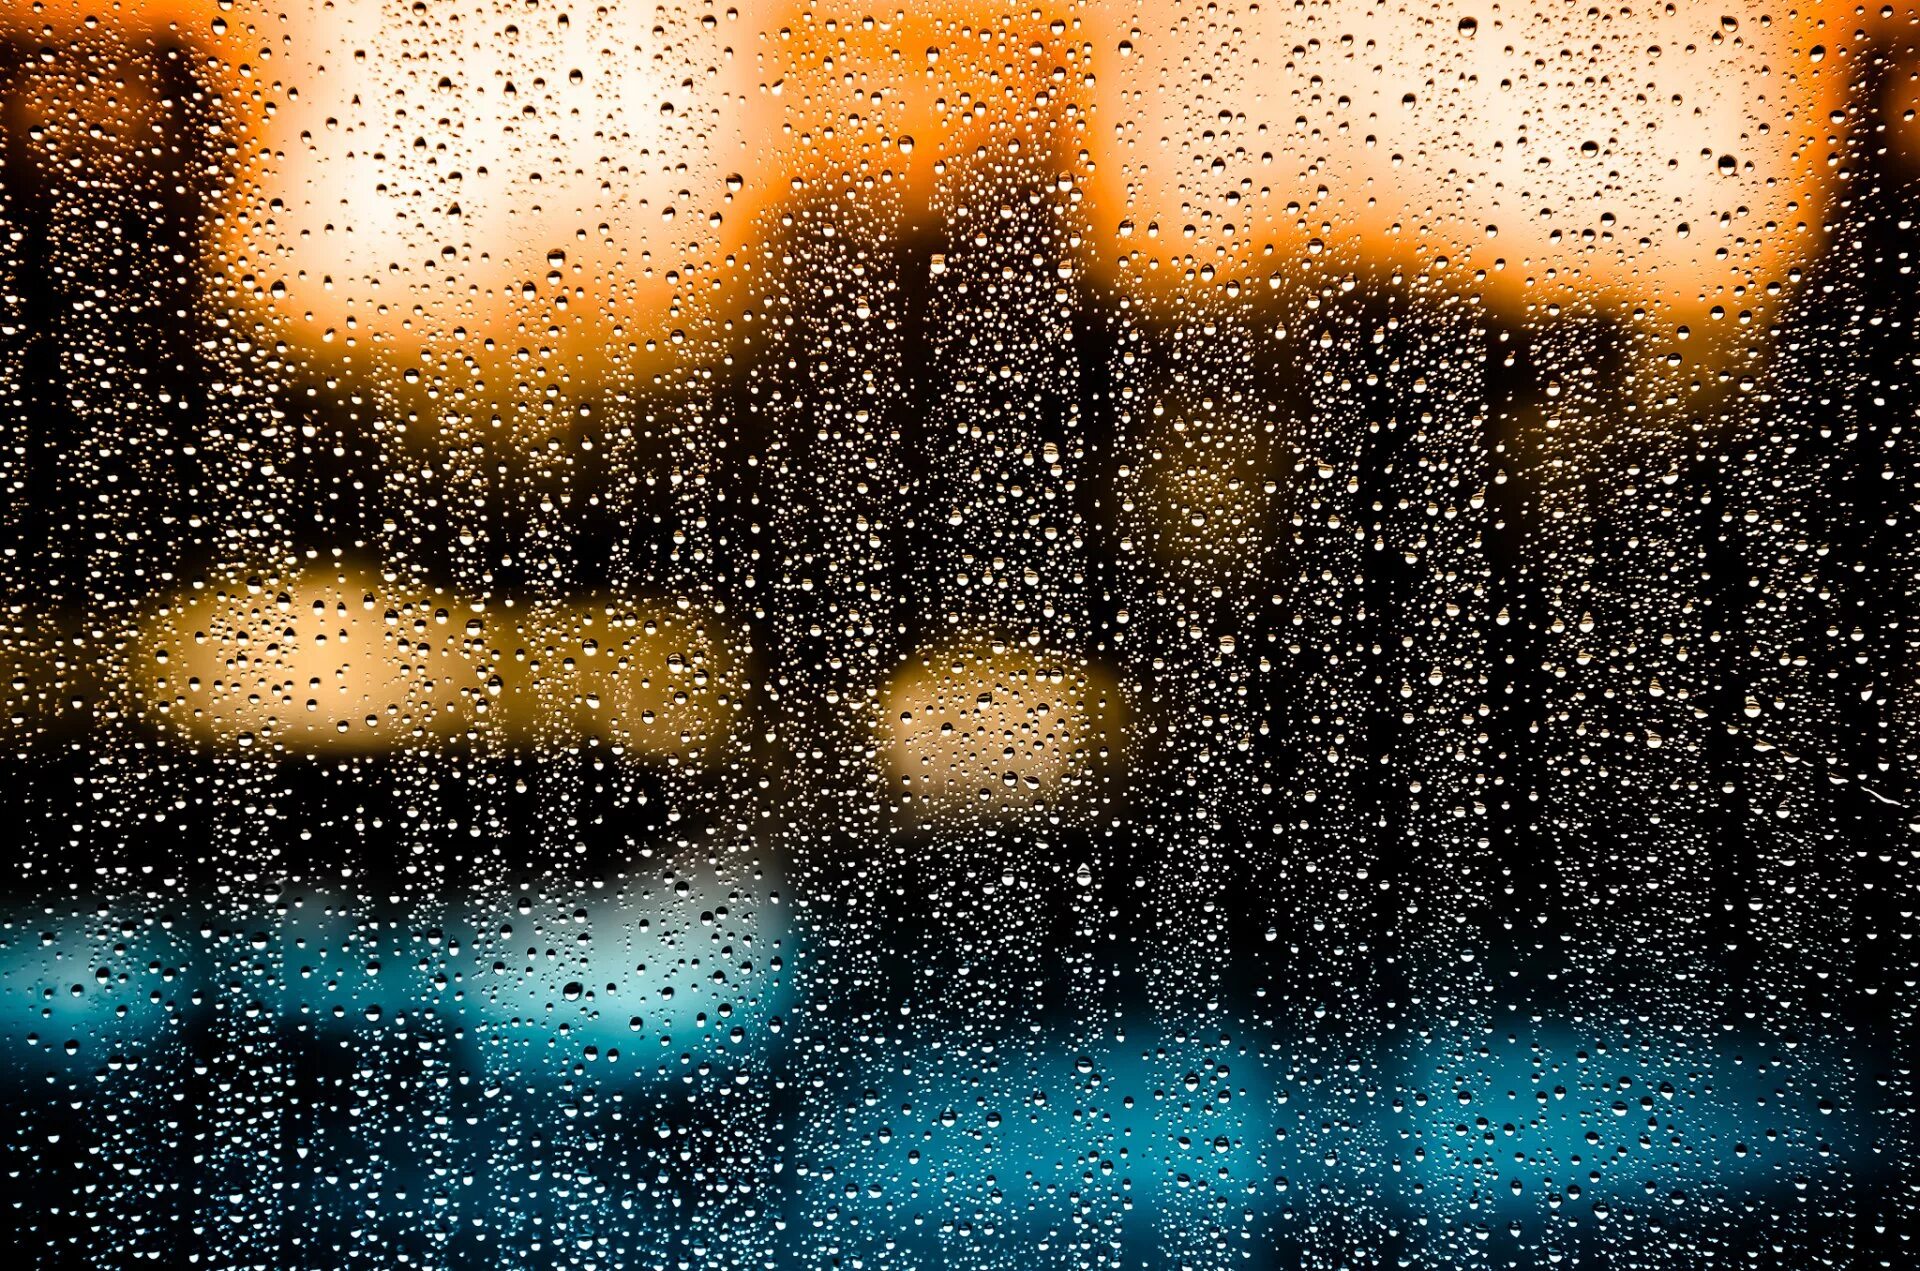 Запотевшее стекло дождь. Капли на стекле. Дождь на стекле. Капли на окне. Капли дождя на стекле.